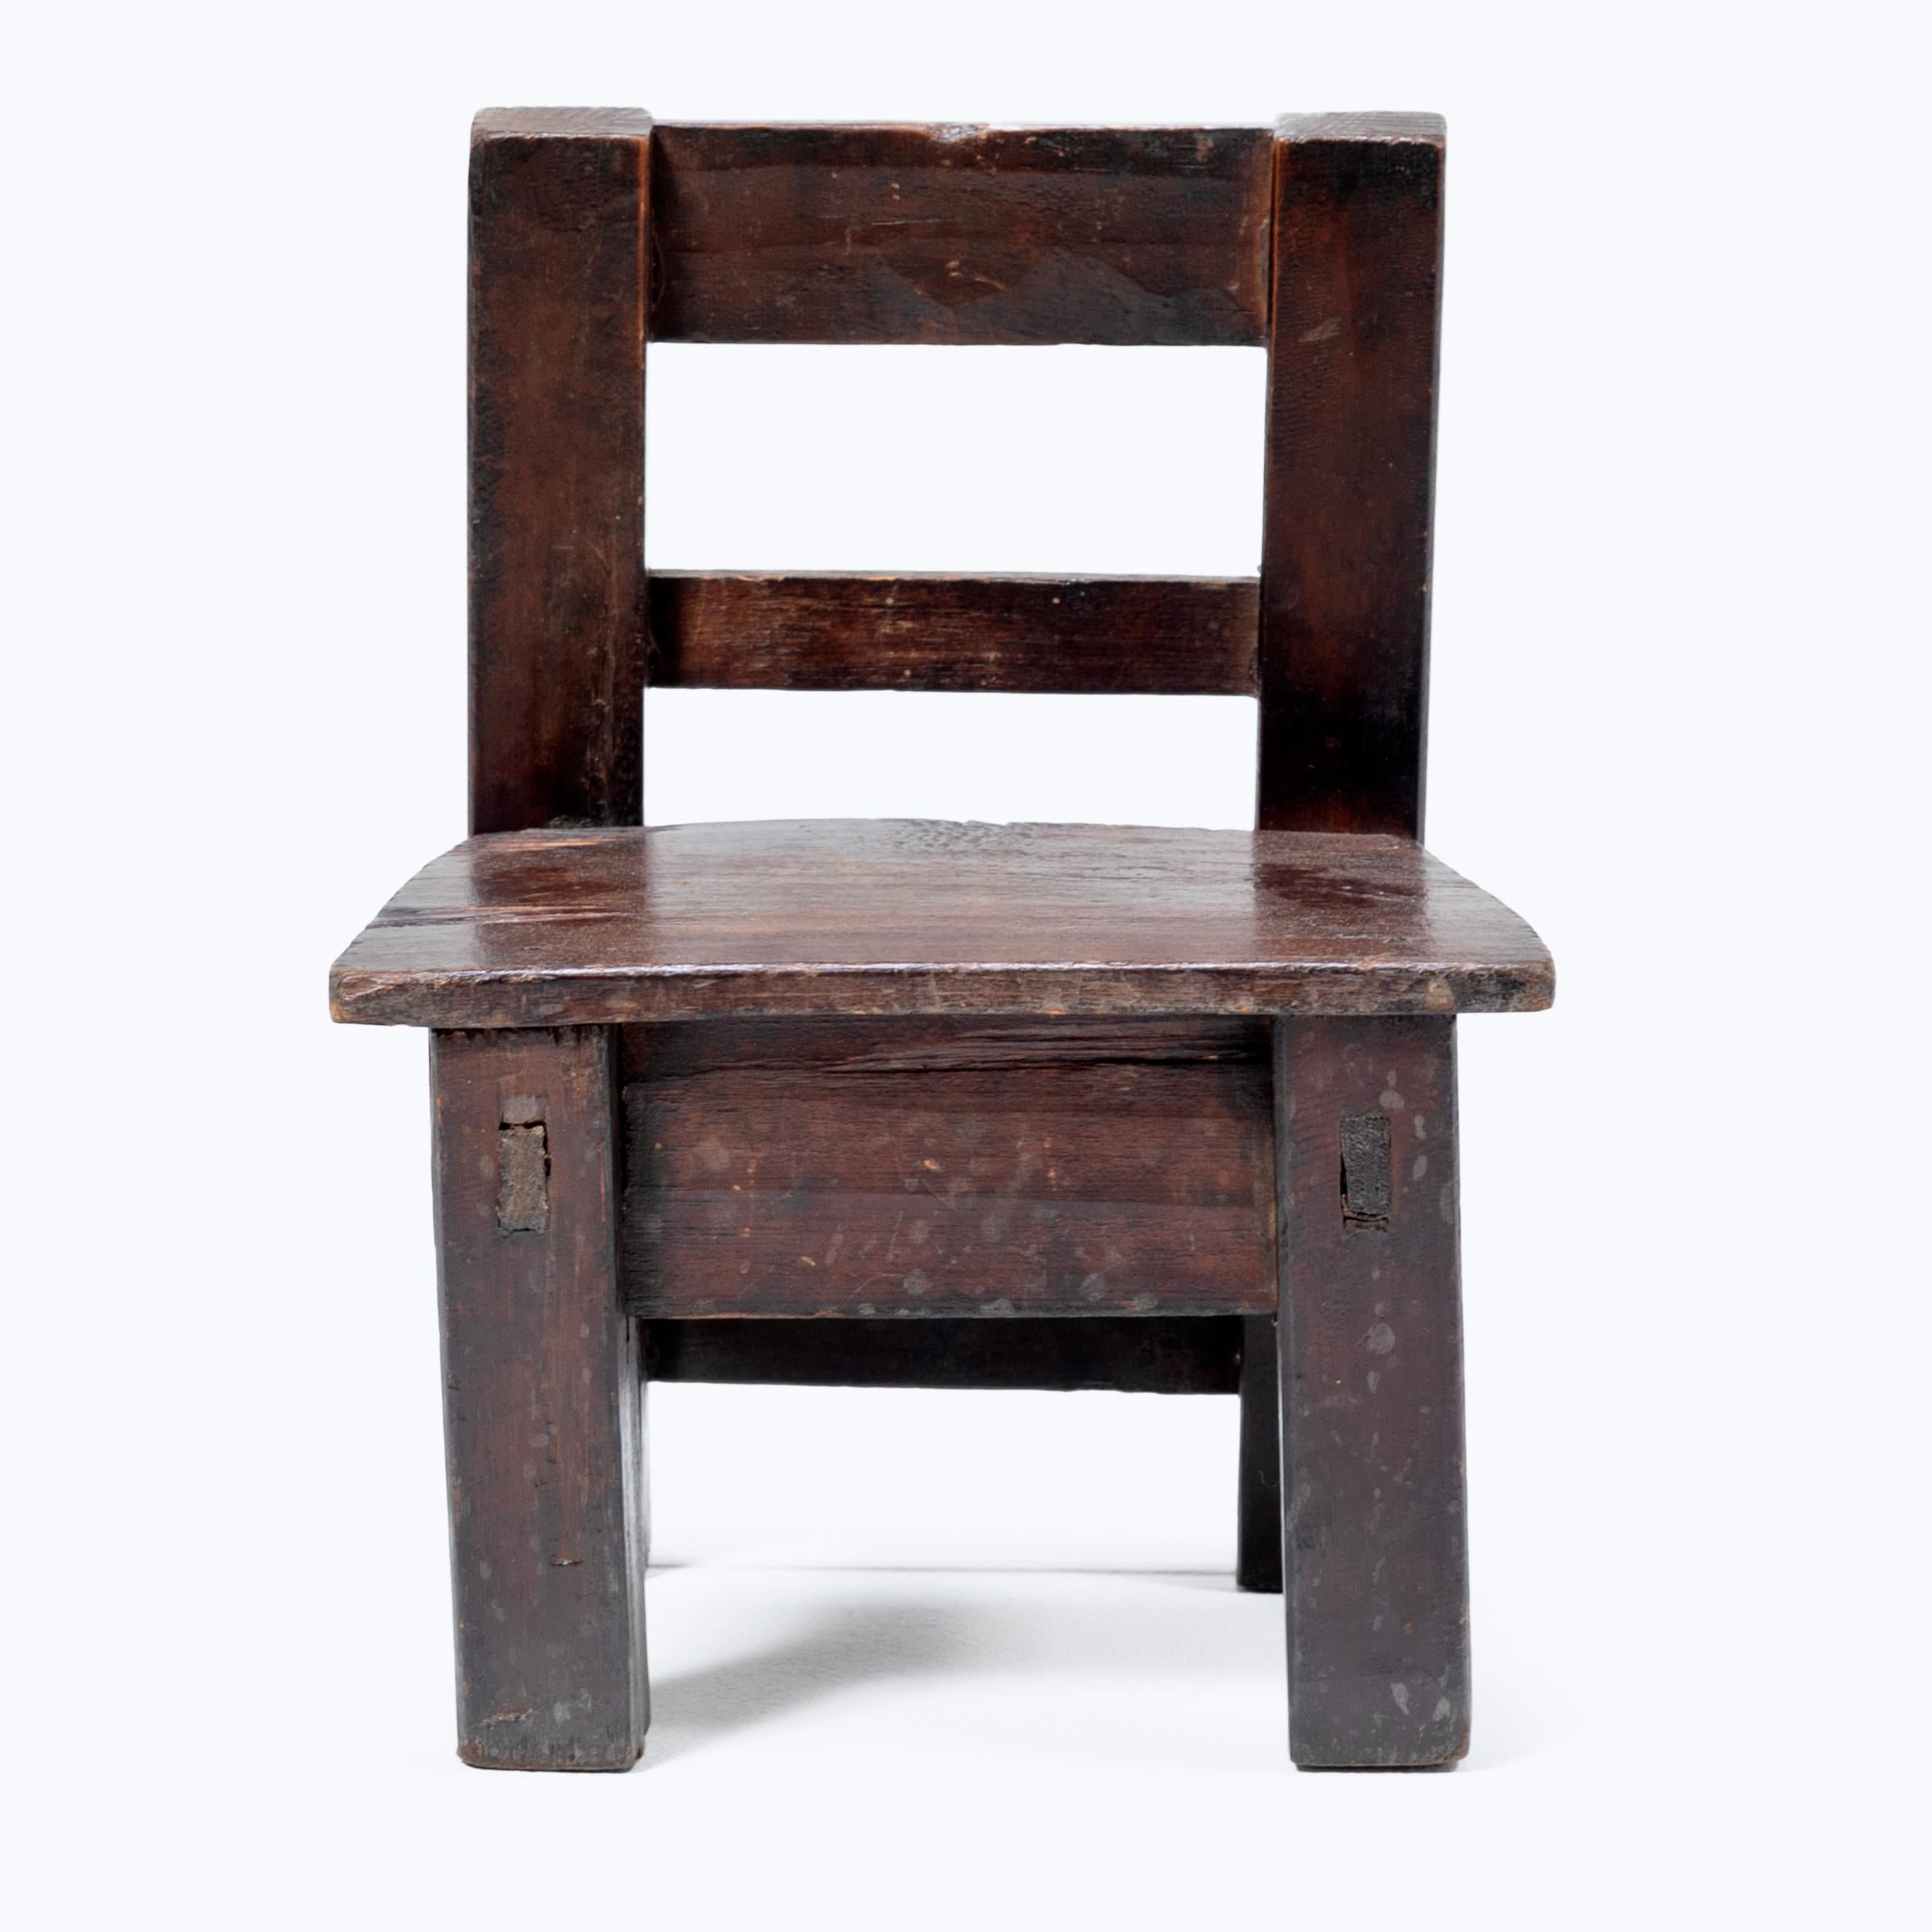 Fabriquée au début du XXe siècle, cette petite chaise d'enfant guatémaltèque séduit par son asymétrie ludique et sa surface richement texturée. Influencée par le design des meubles coloniaux espagnols, cette chaise angulaire présente un dossier à